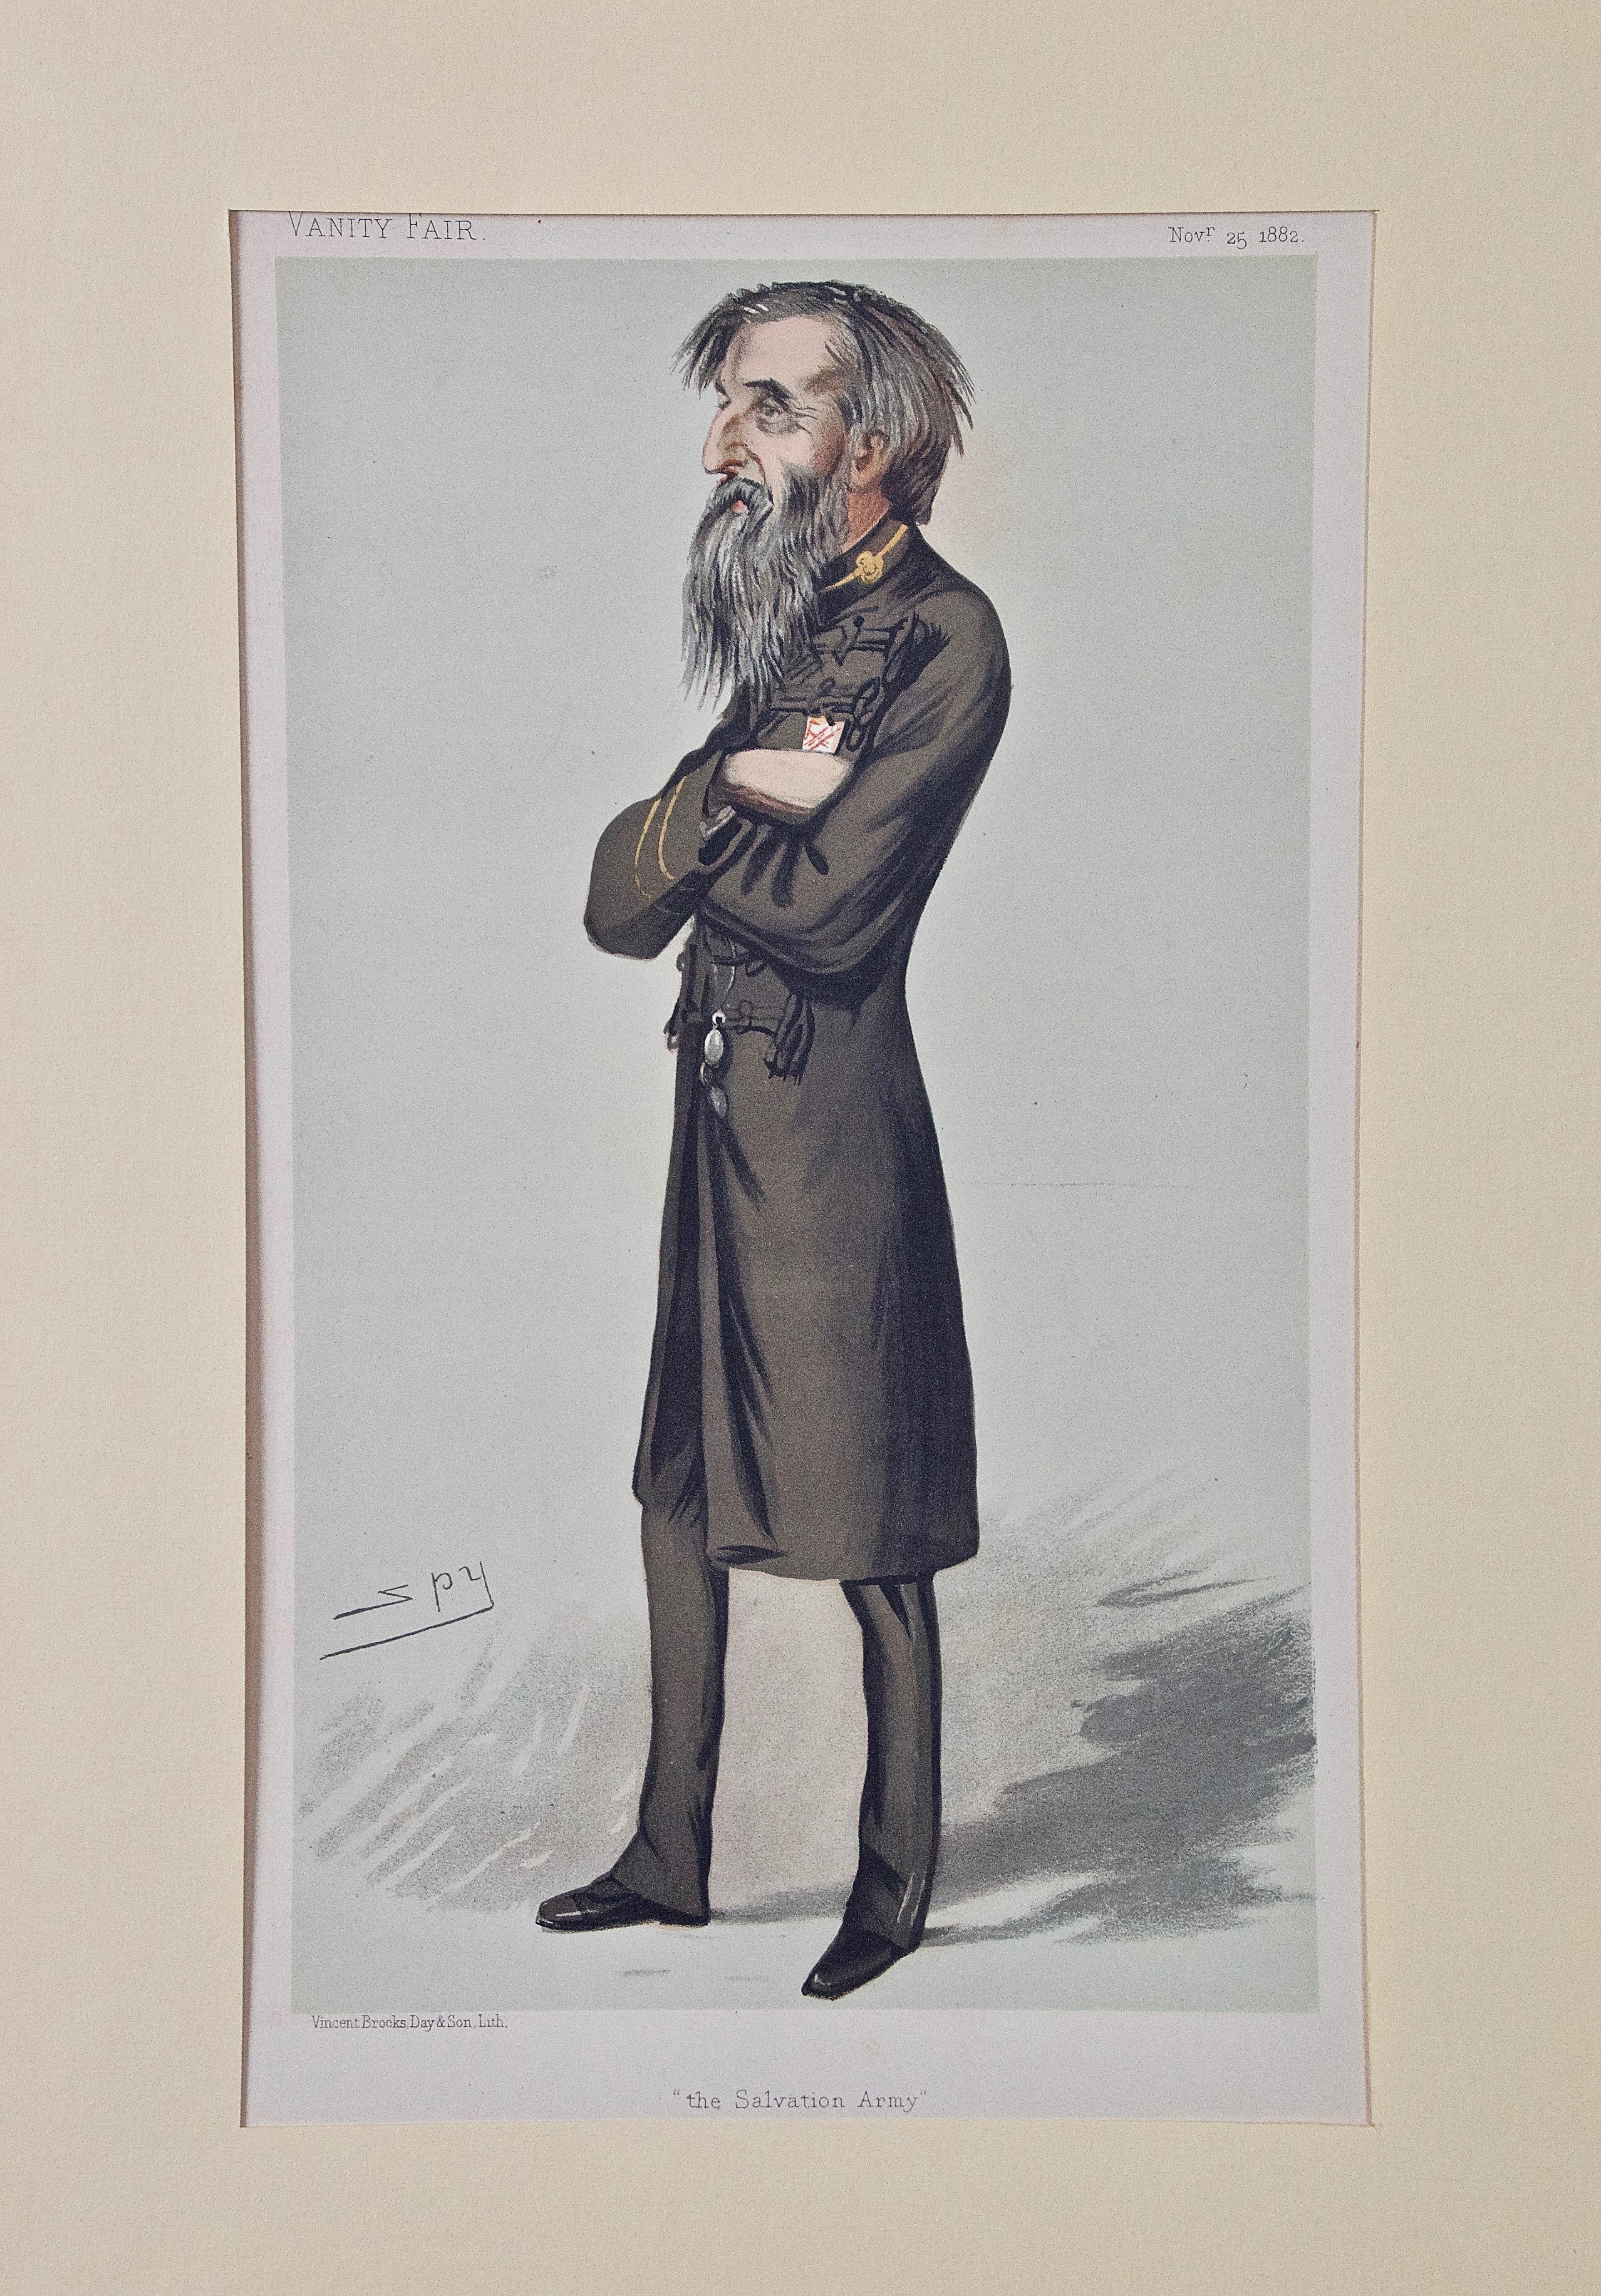 William Booth, Gründer von „The Salvation Army“: Eine Schnitzerei aus der Vanity Fair des 19. Jahrhunderts